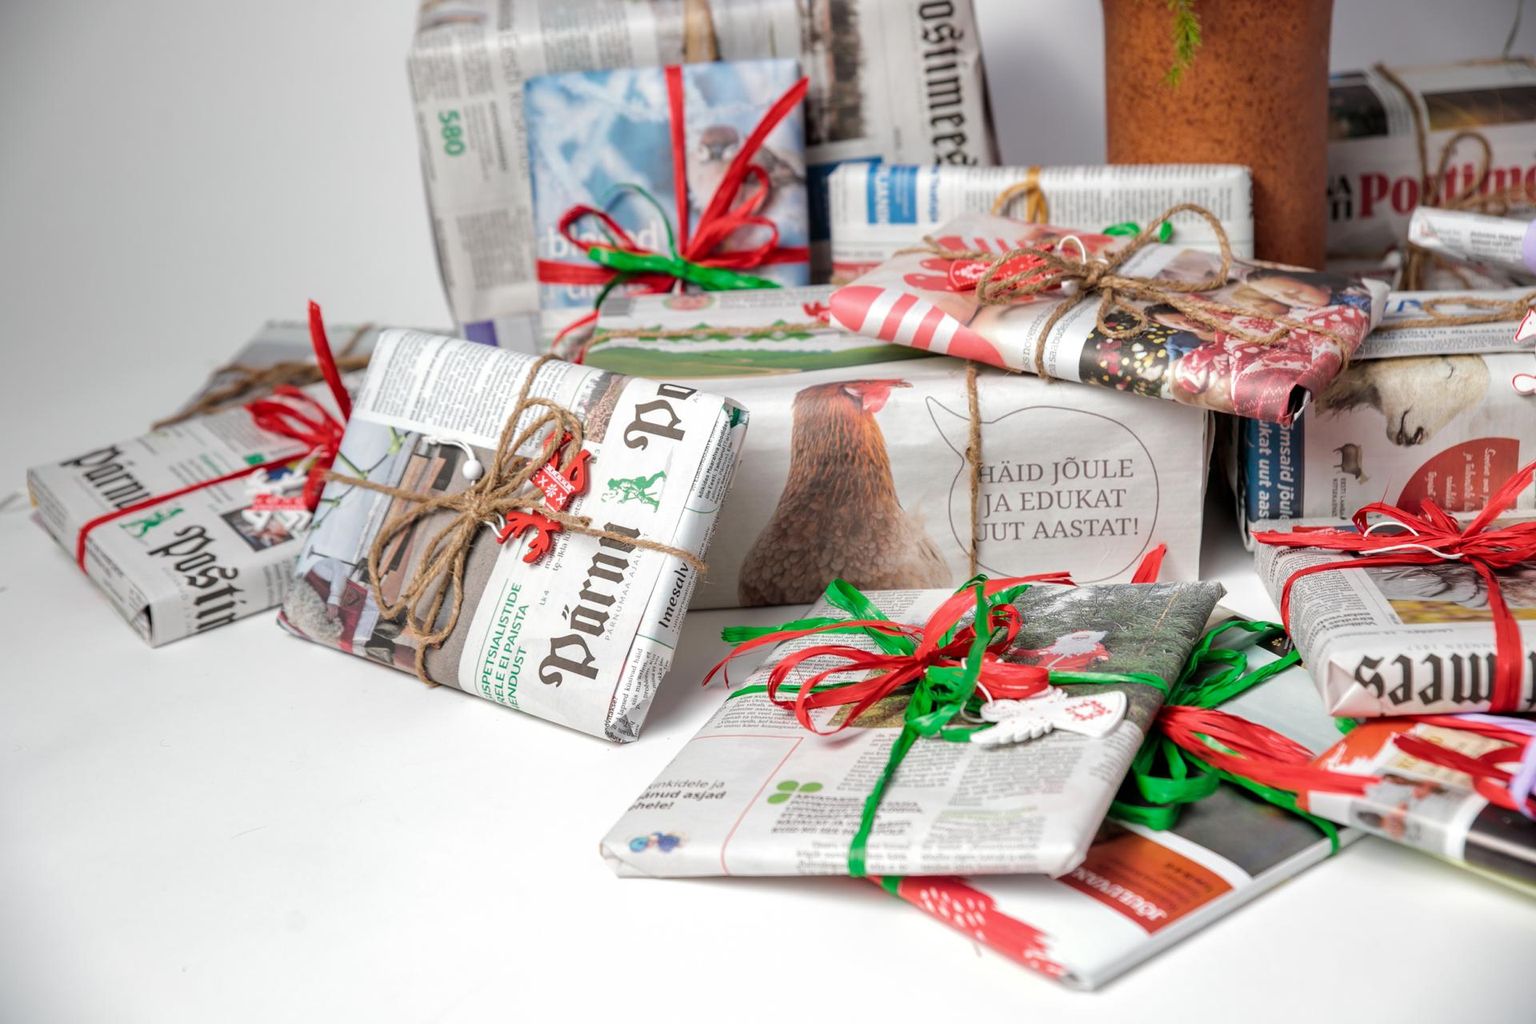 Pärnu Postimehe peatoimetaja kutsub jõuluvana abilisi üles kasutama kinkide pakkimiseks kauneid ajalehekülgi. Pilte imelistest pakkidest ootame lehe Facebooki seinale.